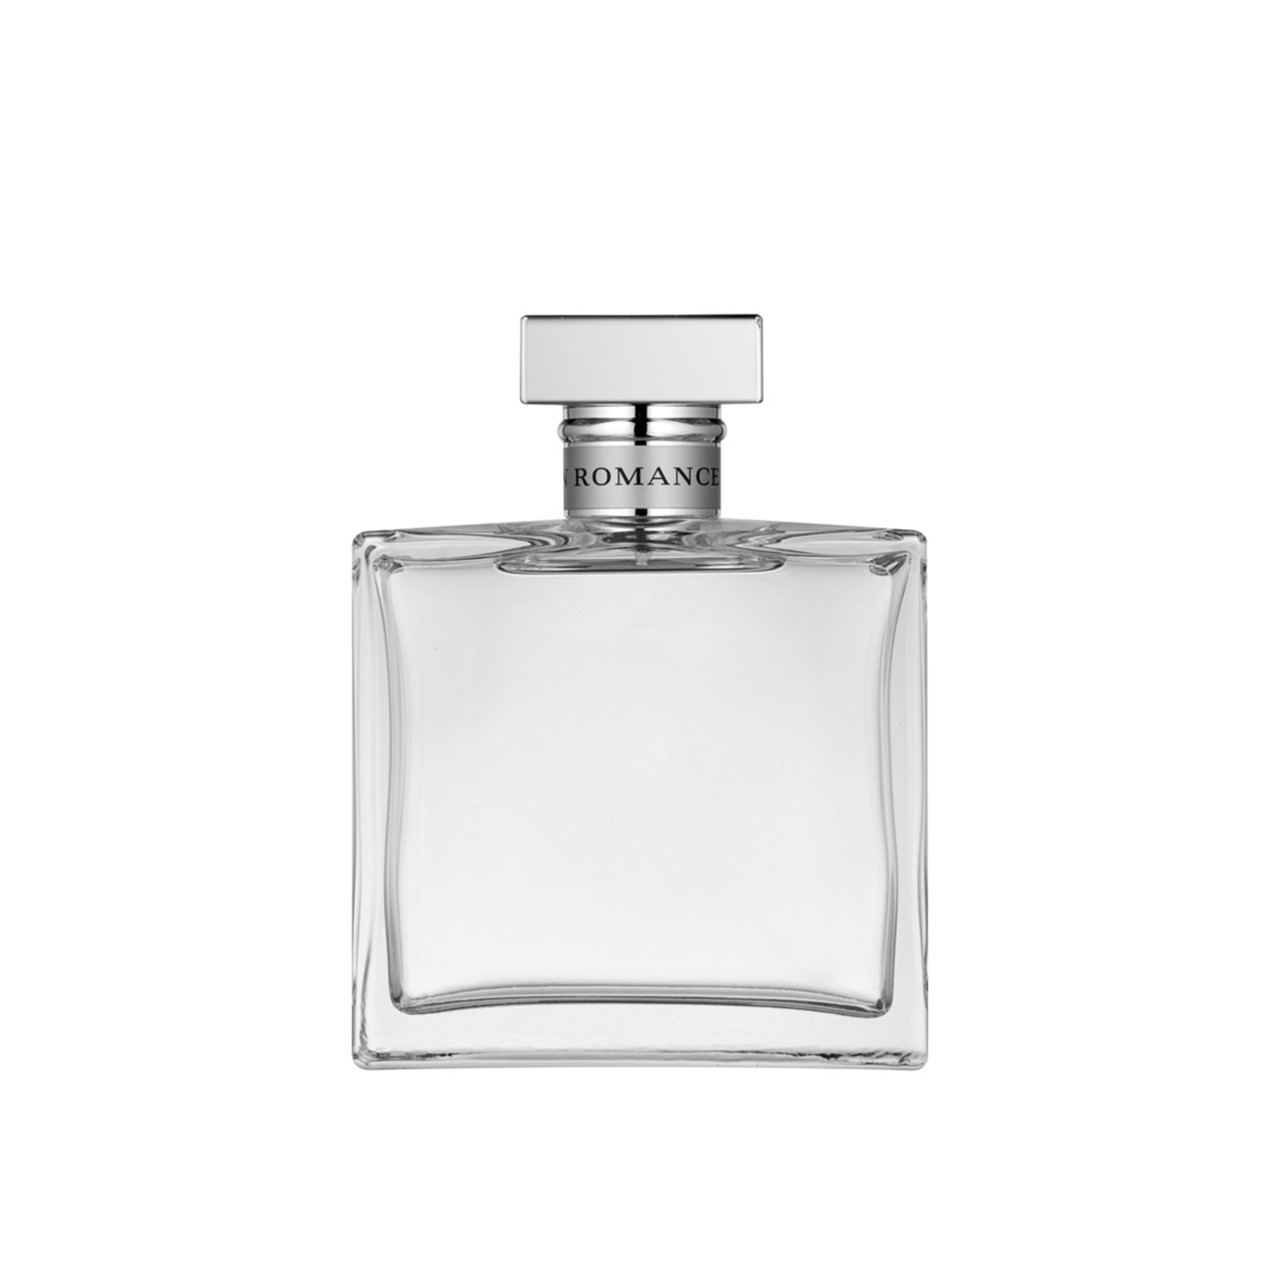 Ralph Lauren Romance - Parfum